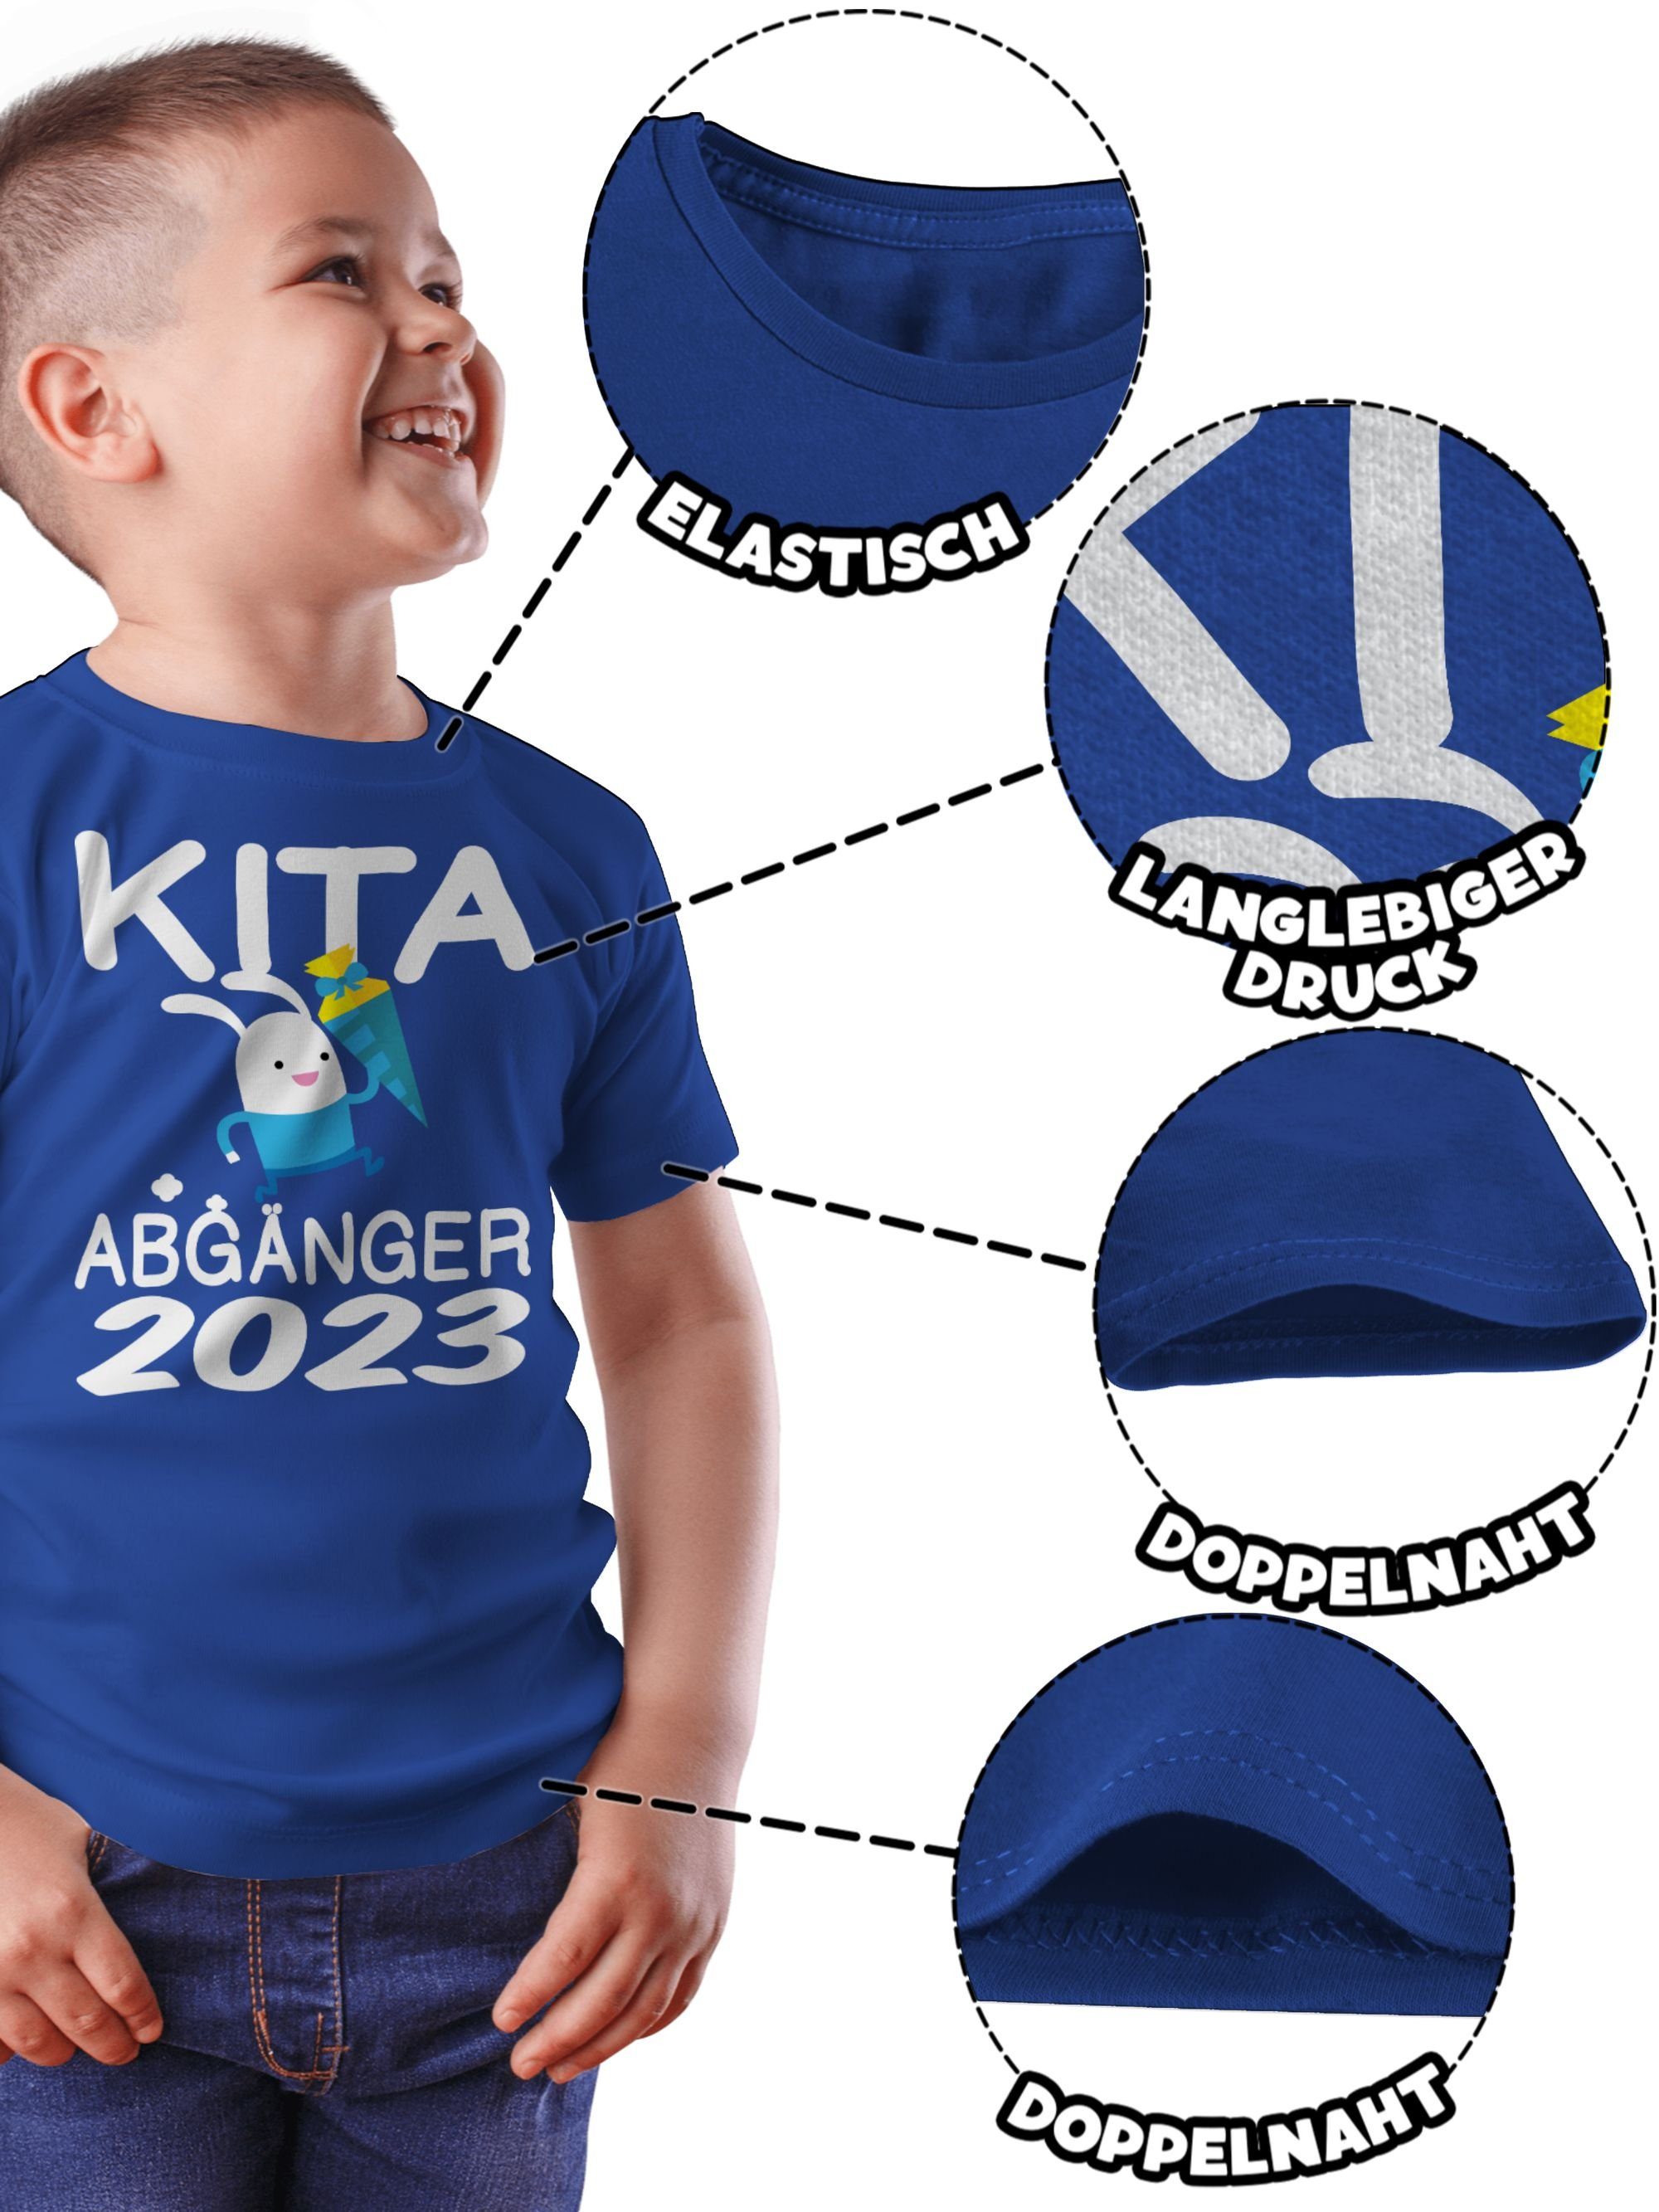 Einschulung 2 rennender Schultüte T-Shirt Junge mit Schulanfang Geschenke Royalblau Abgänger 2023 Kita Hase Shirtracer